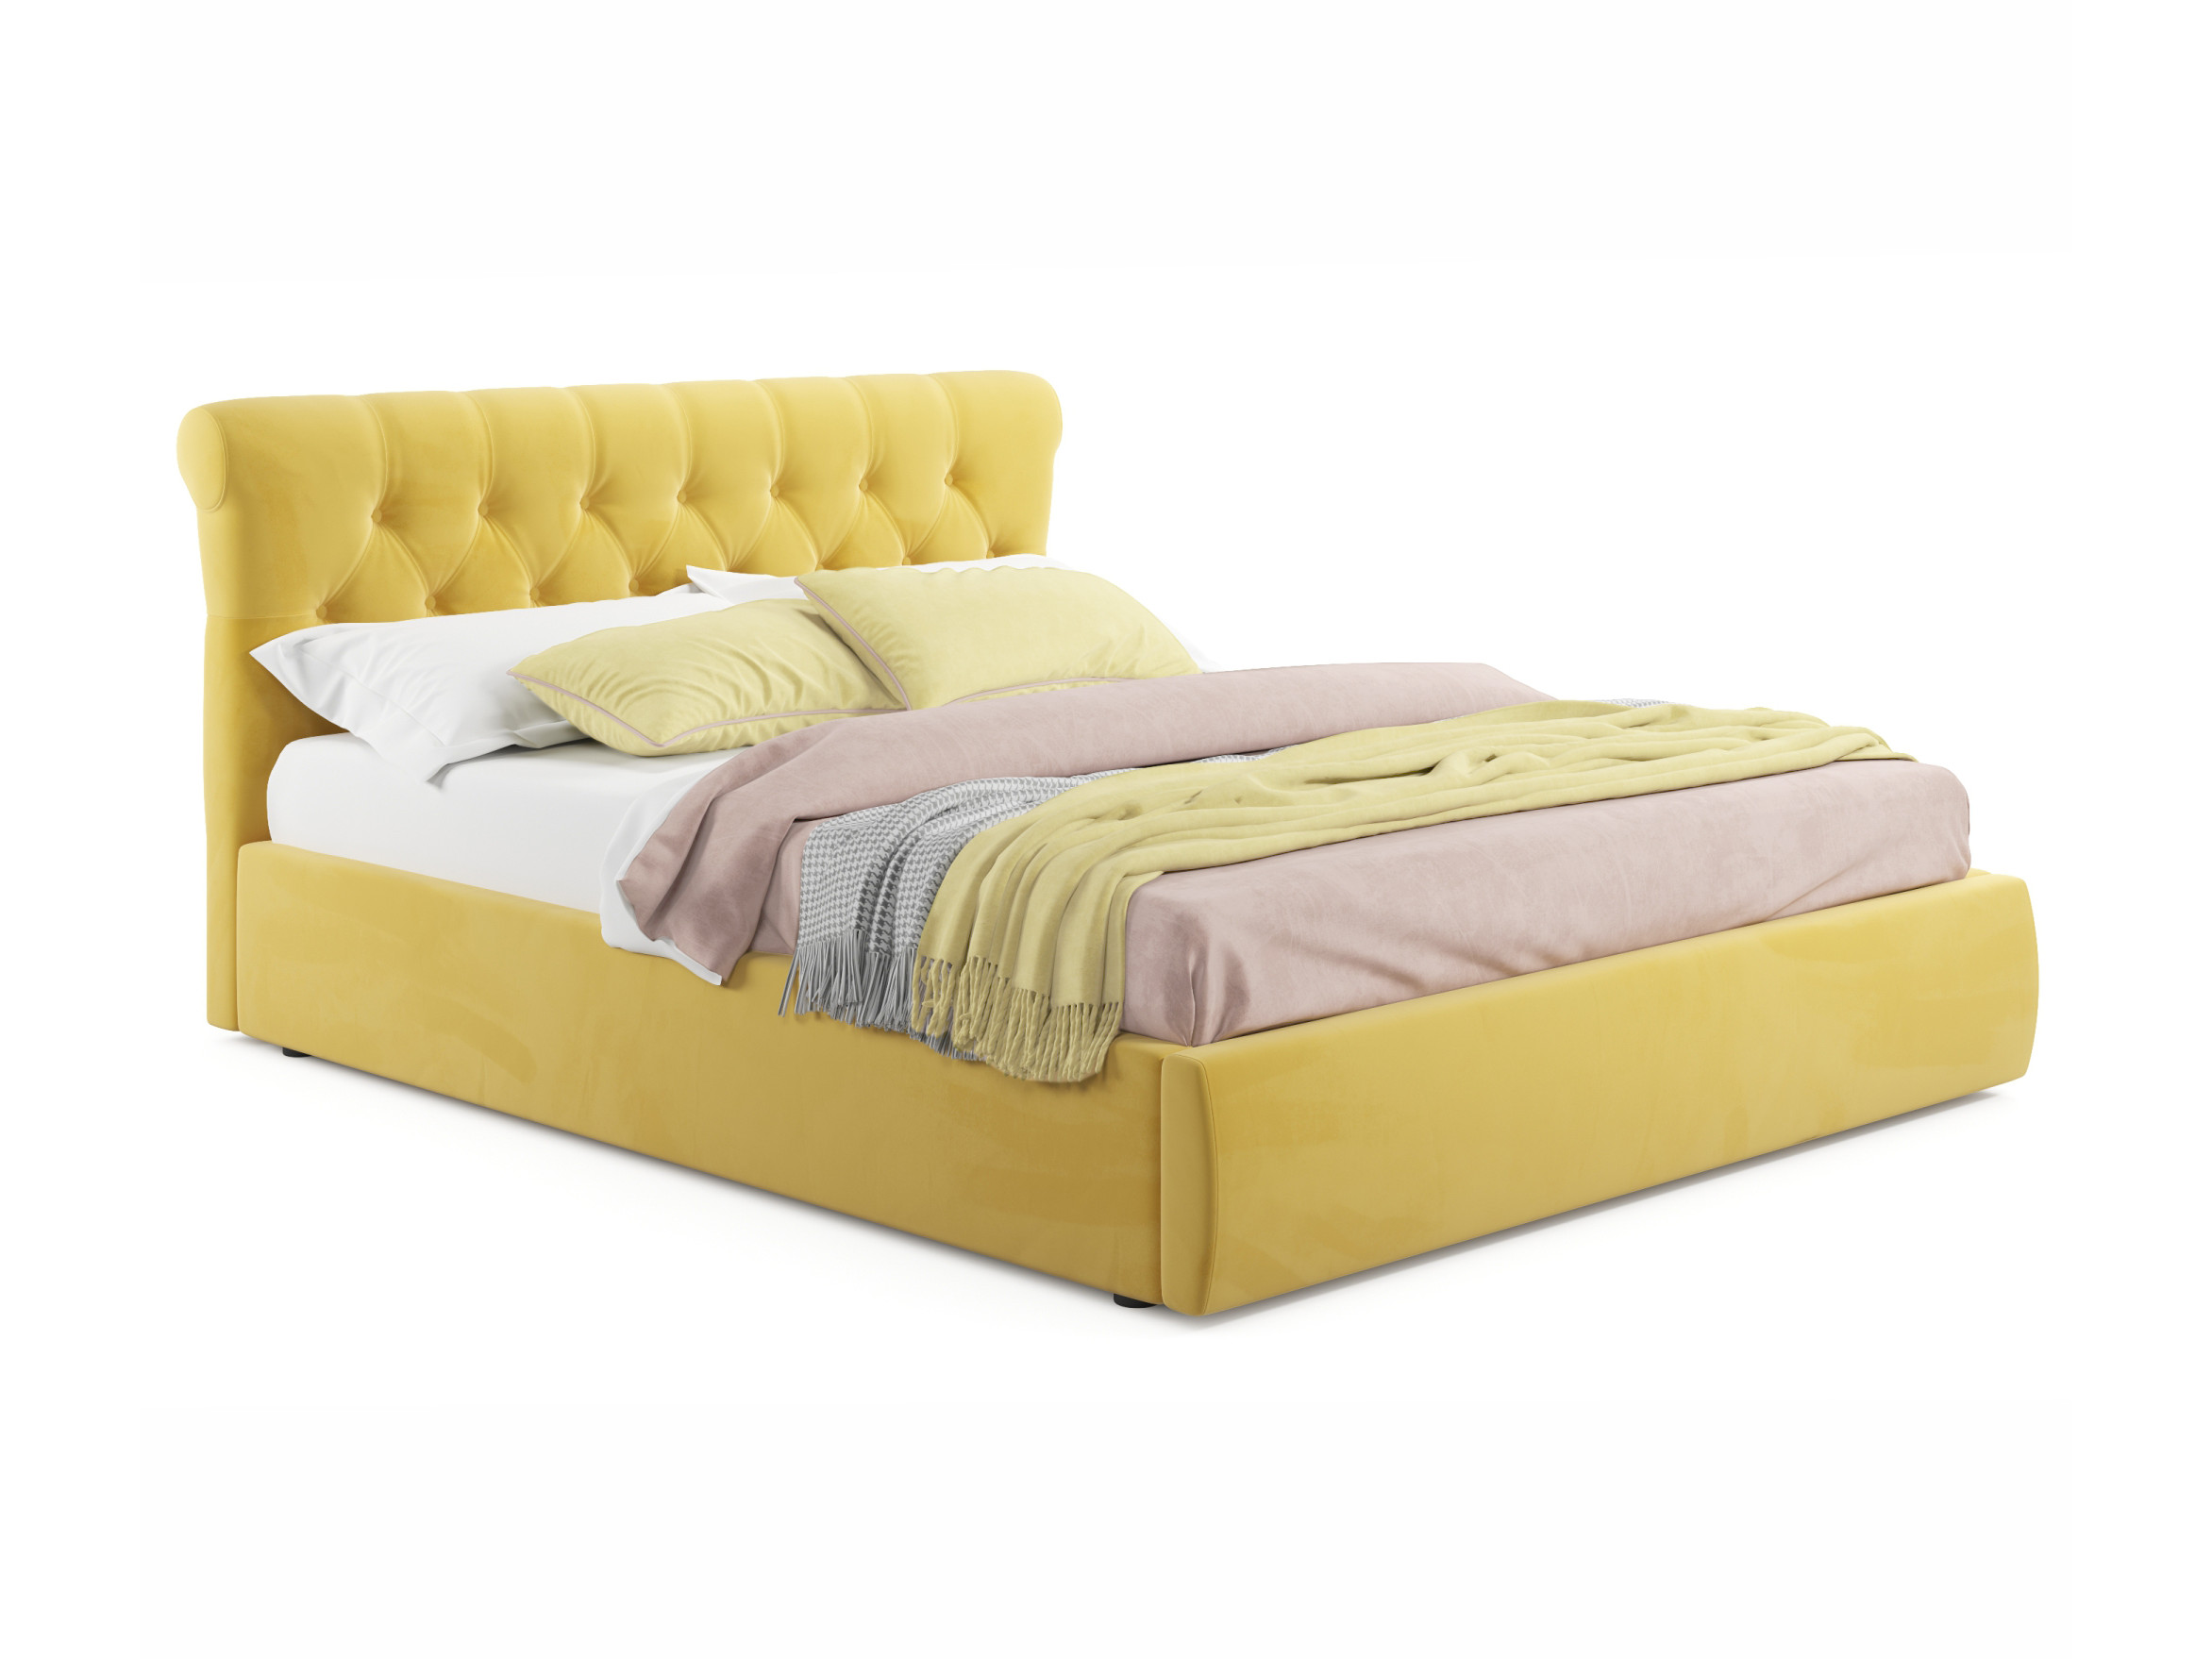 Мягкая кровать Ameli 1400 желтая с подъемным механизмом желтый, Желтый, Велюр, ДСП мягкая кровать с тумбами ameli 1600 желтая с подъемным механизмом желтый желтый велюр дсп